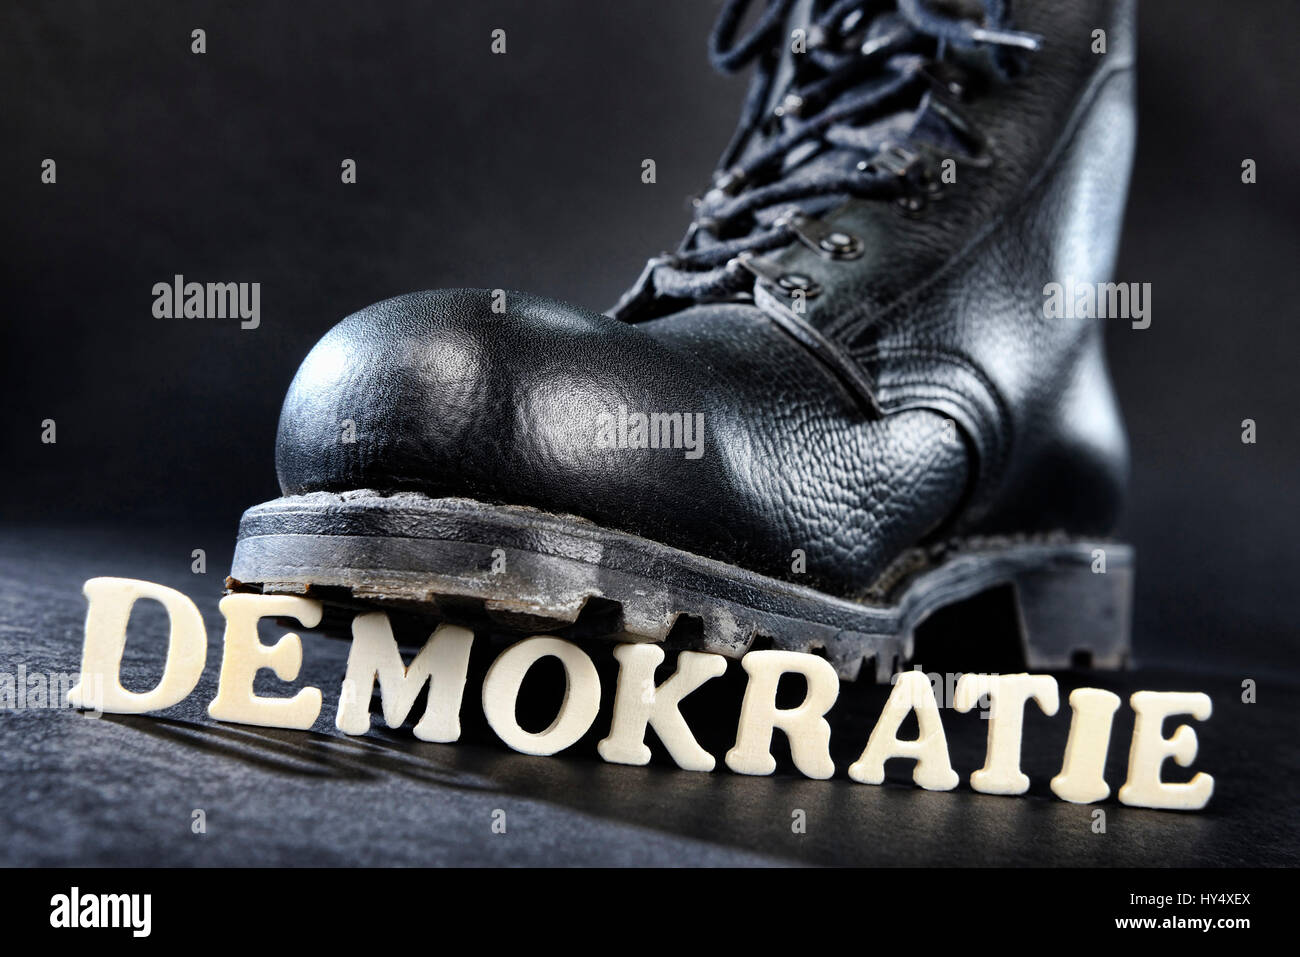 Jumper's boot on democracy stroke, right-wing extremism, Springerstiefel auf Demokratie-Schriftzug, Rechtsextremismus Stock Photo